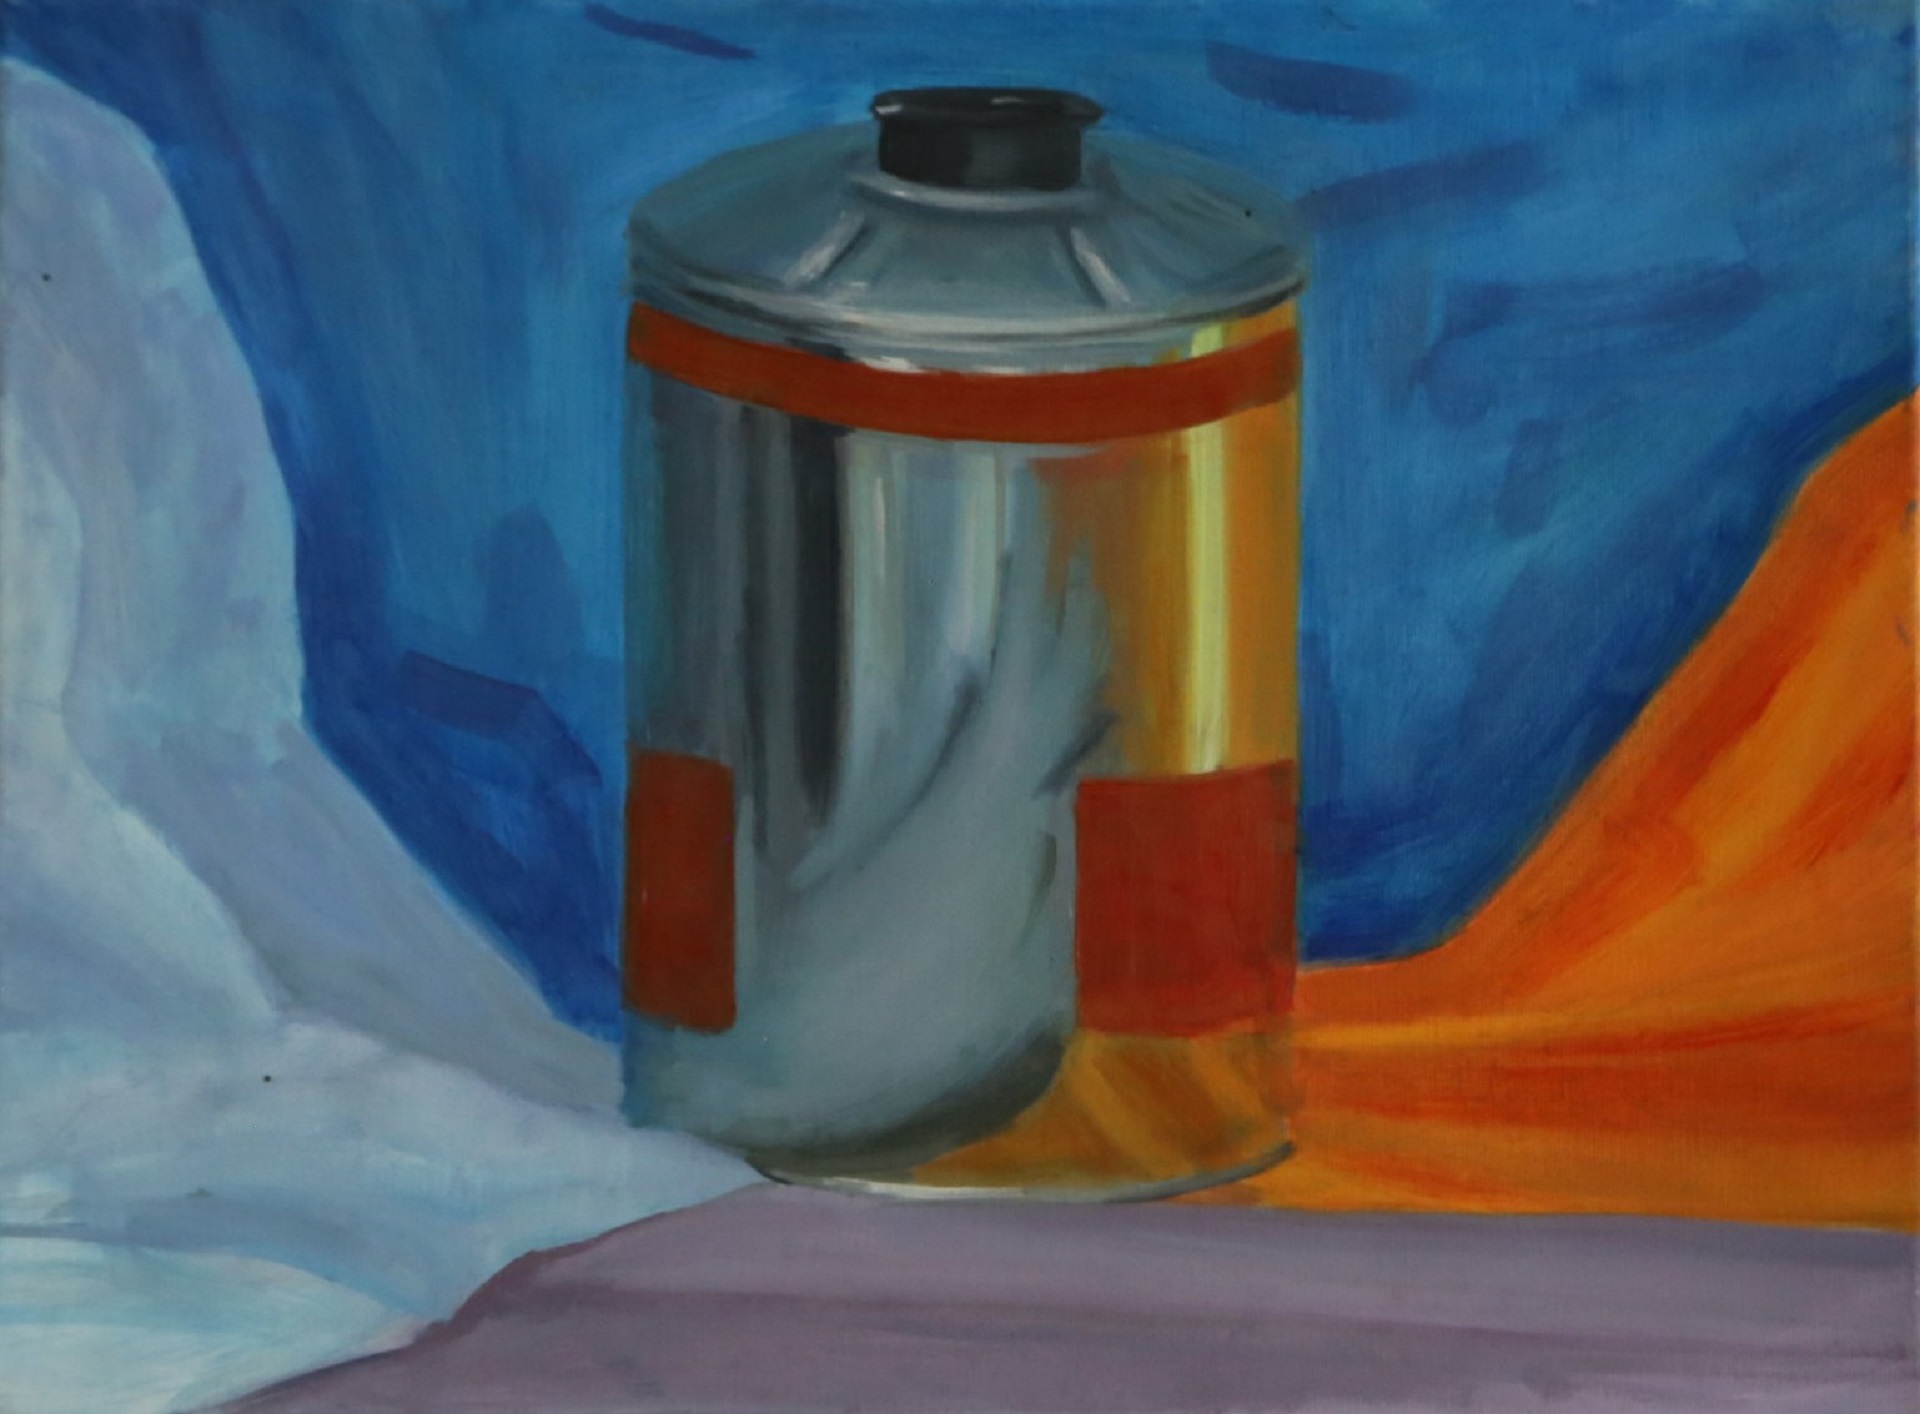 Obraz przedstawia srebrną puszkę usytuowaną w otoczeniu niebiesko-oranżowych draperii.